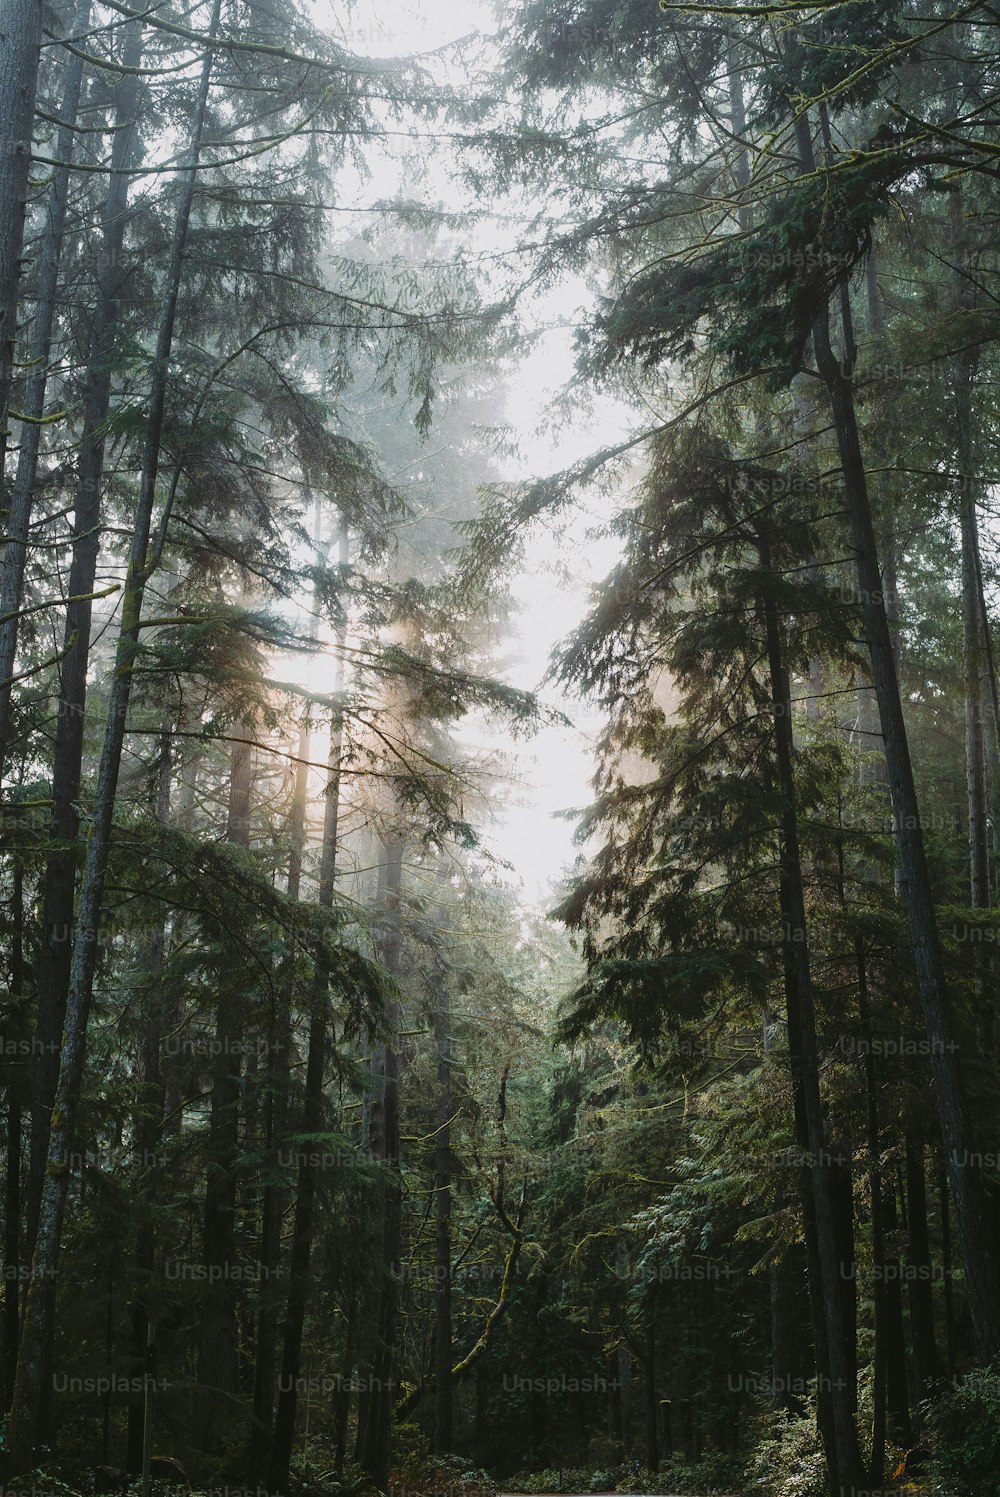 Une route au milieu d’une forêt entourée de grands arbres